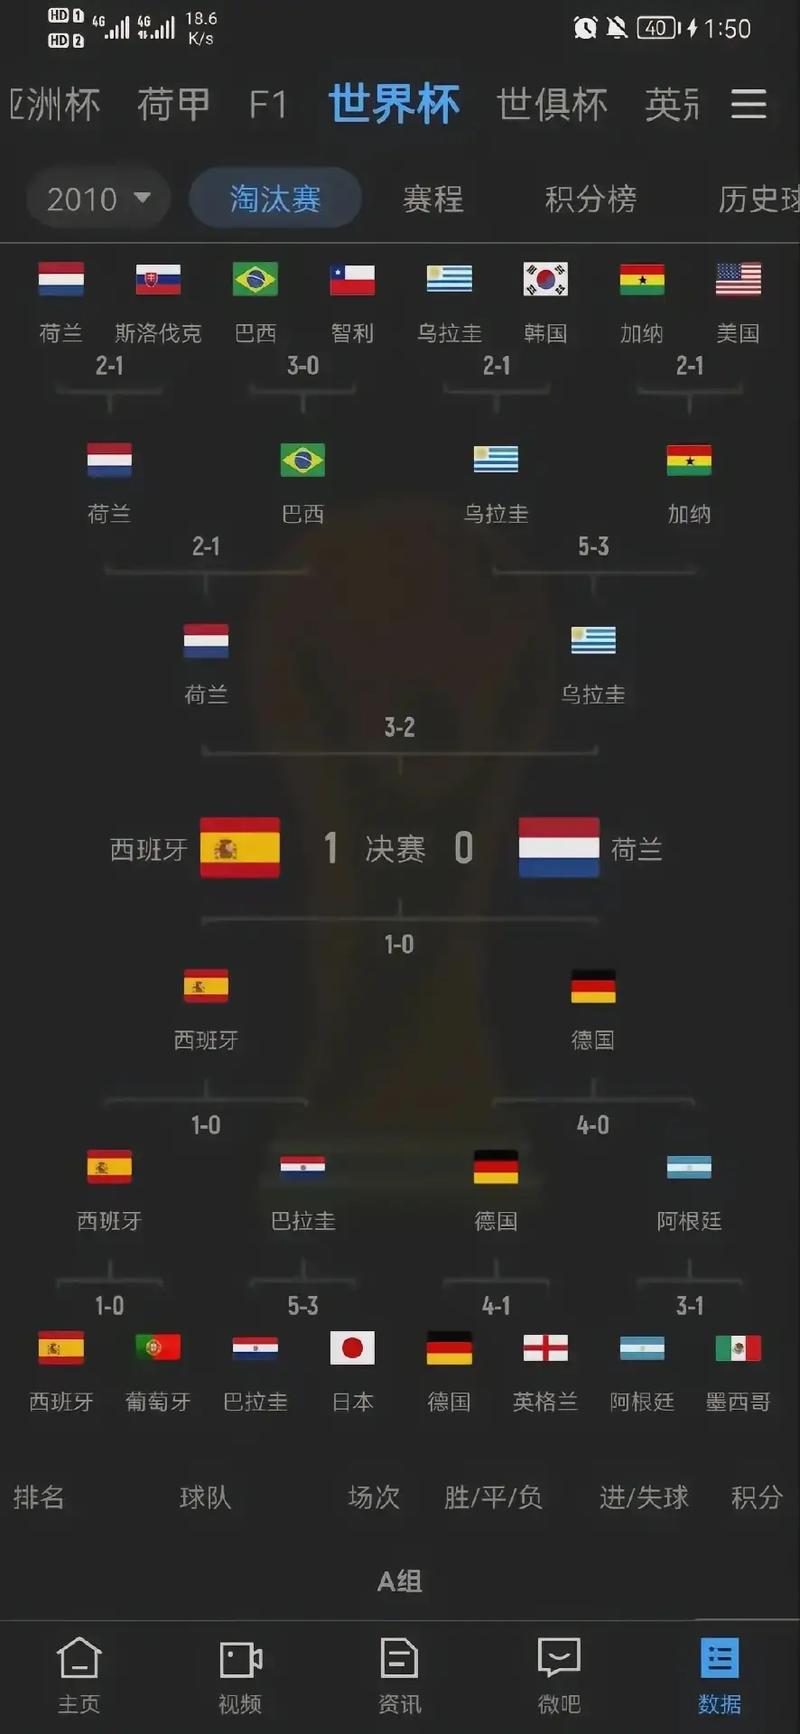 德国韩国世界杯2018比分